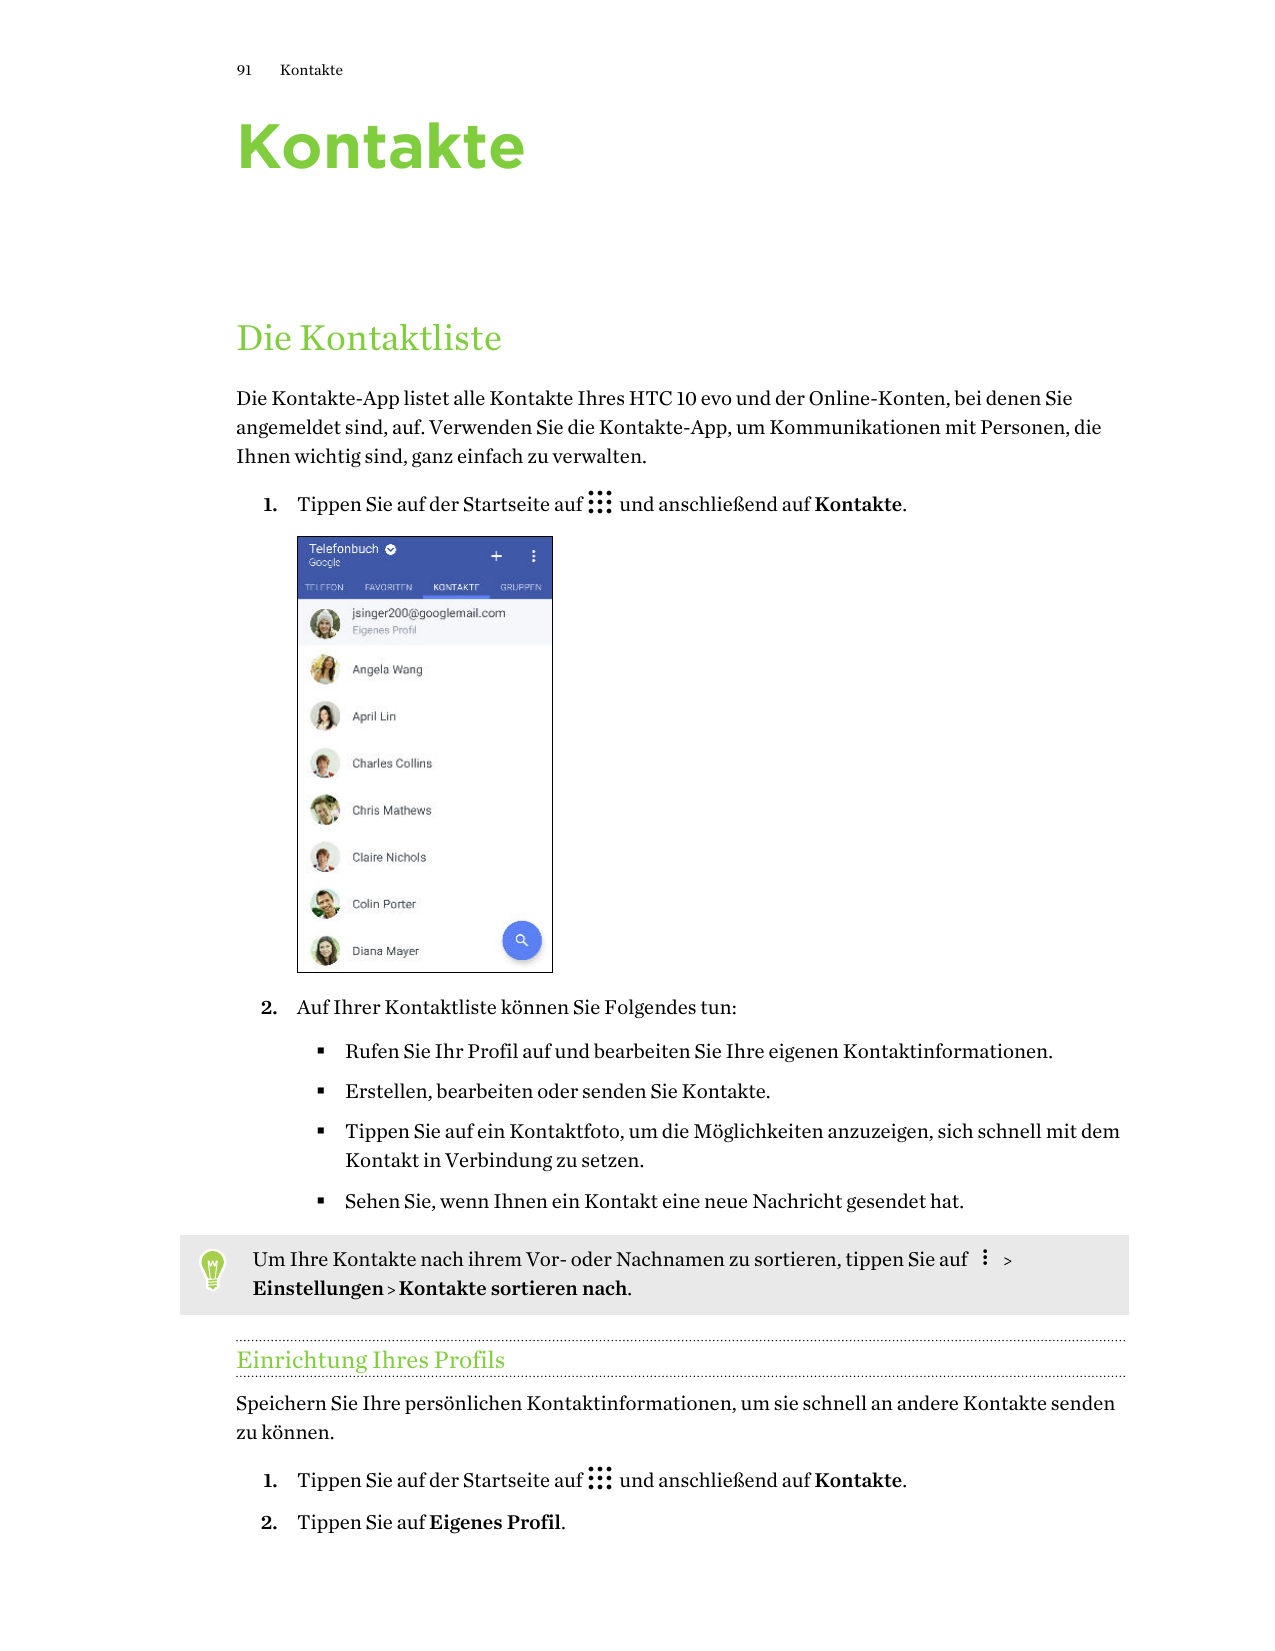 91KontakteKontakteDie KontaktlisteDie Kontakte-App listet alle Kontakte Ihres HTC 10 evo und der Online-Konten, bei denen Sieang